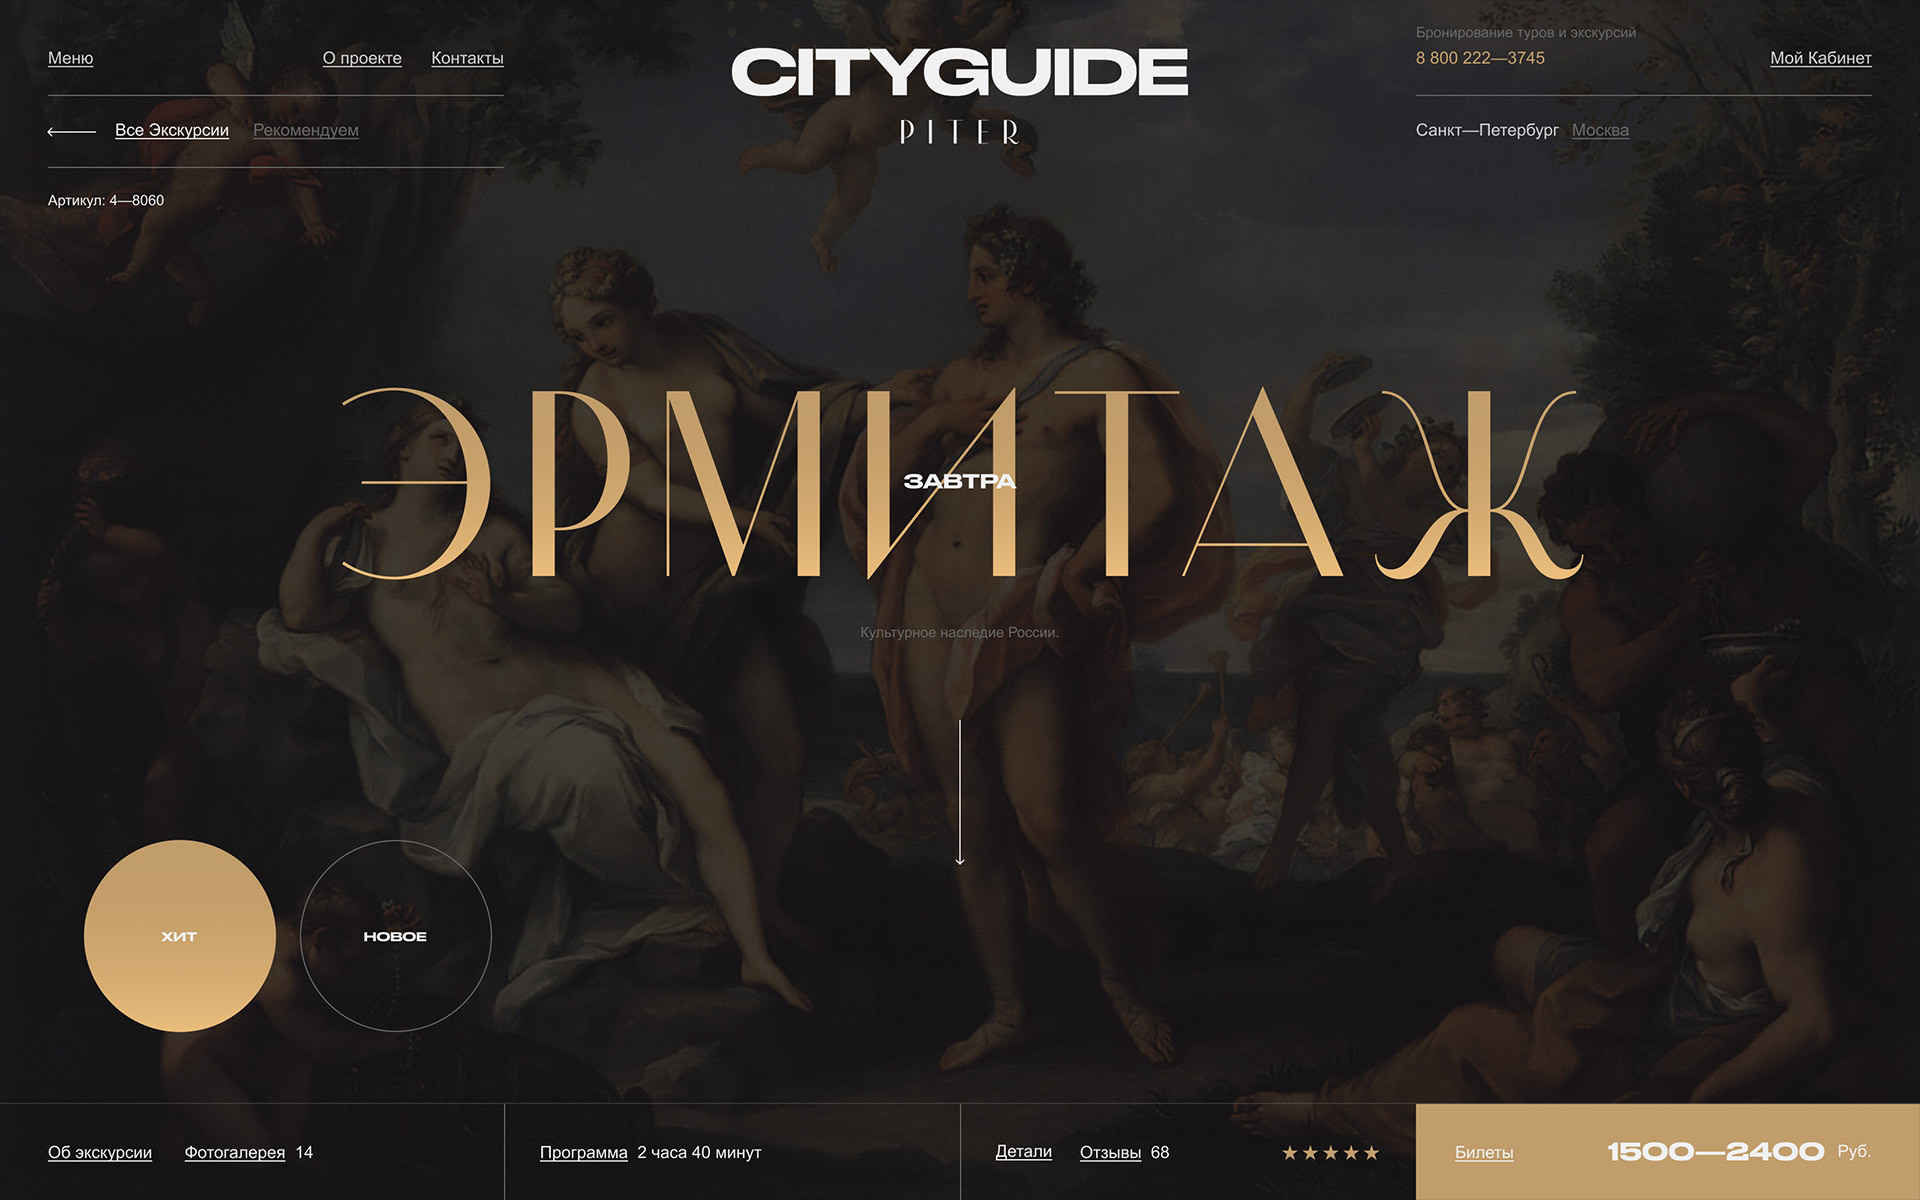 CityGuide — Изображение №6 — Интерфейсы, Анимация на Dprofile